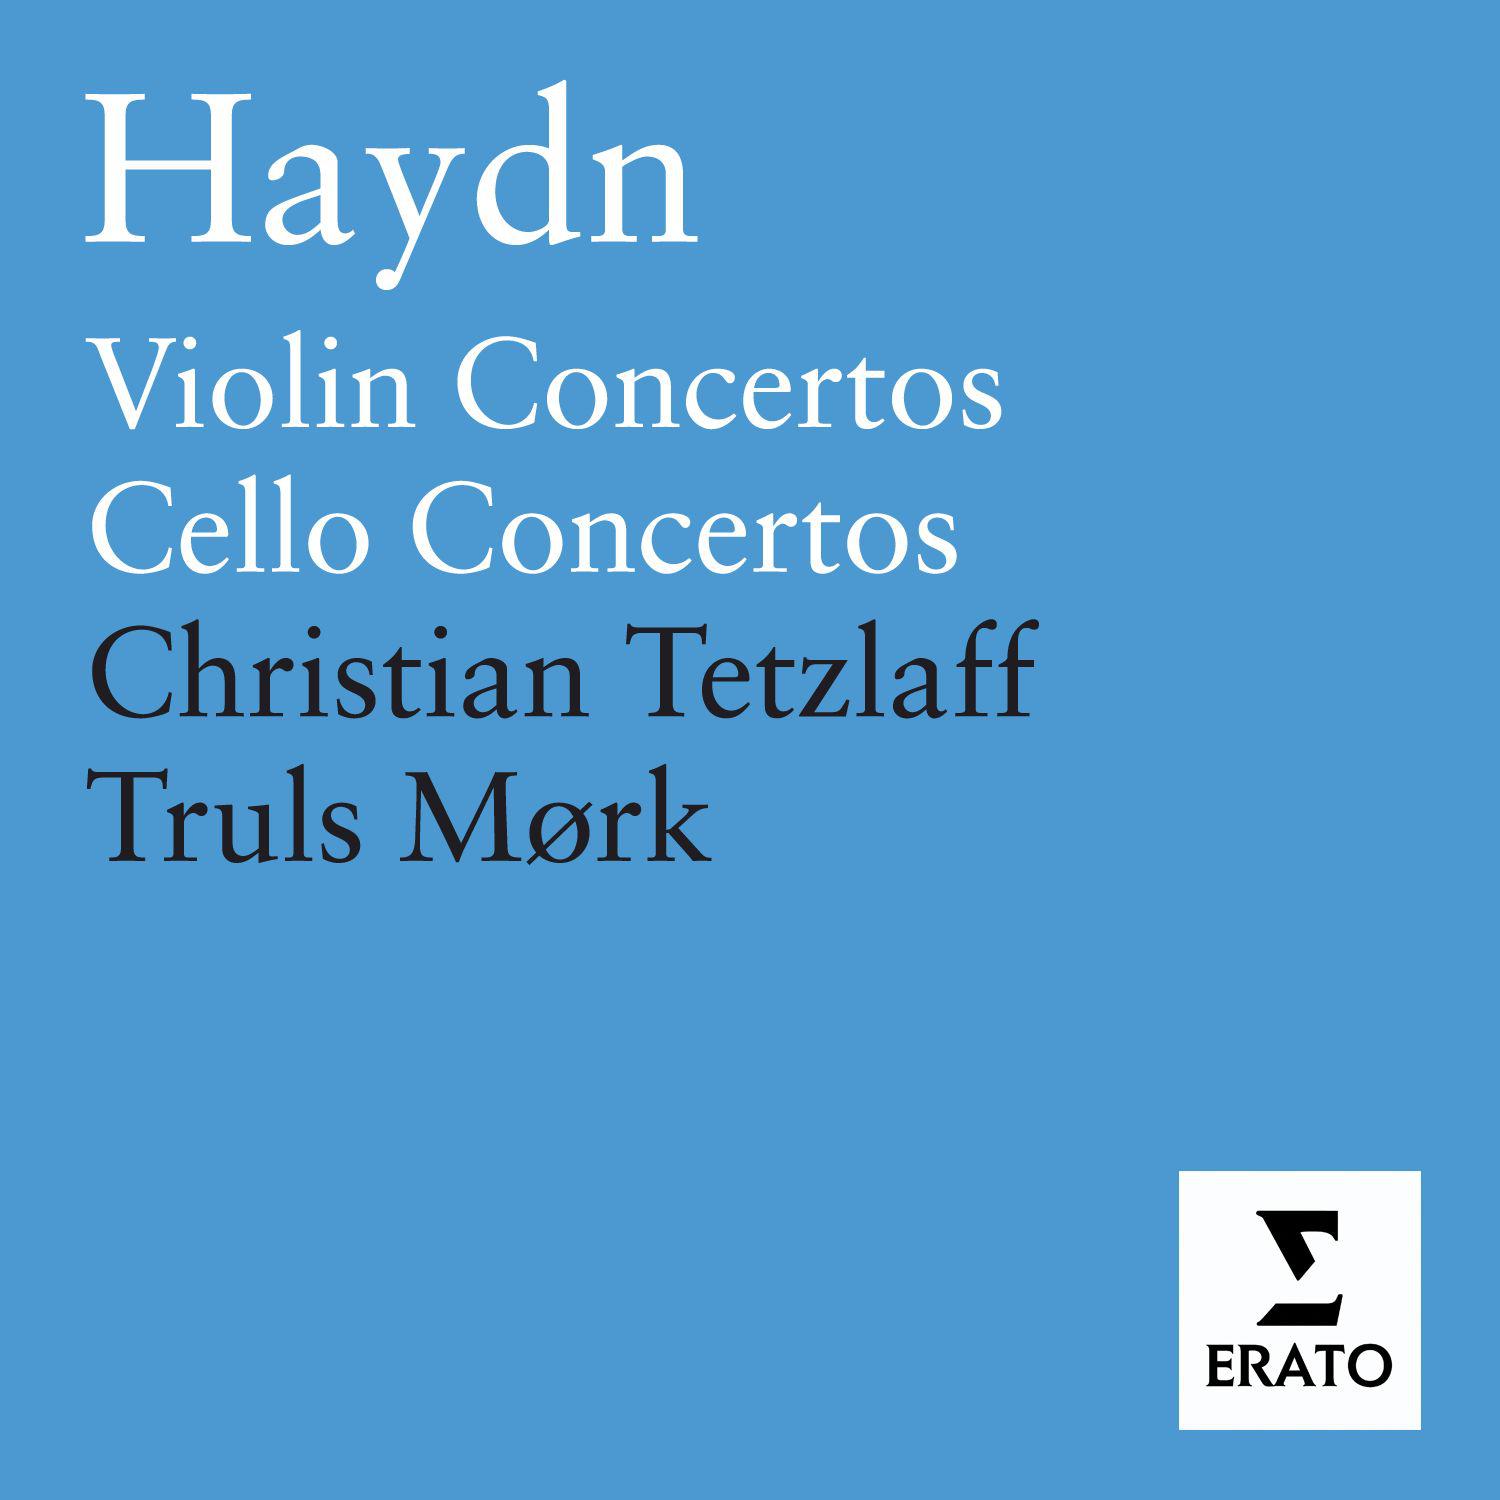 Cello Concerto No. 2 in D Major, Hob. VIIb/2: III. Rondo - Allegro